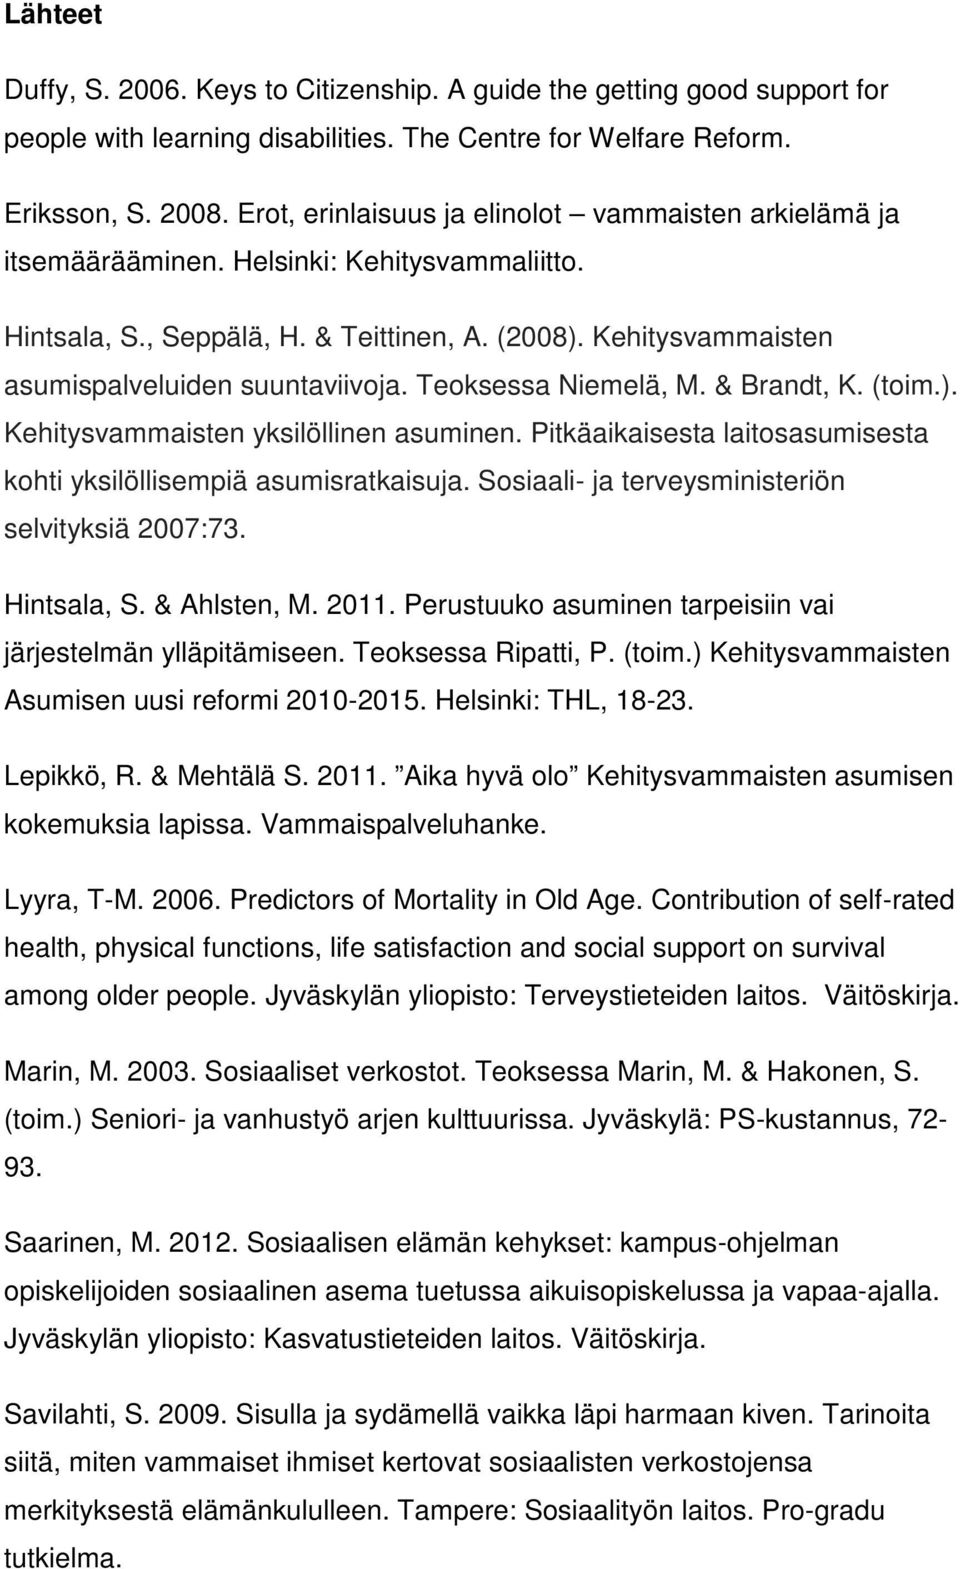 Kehitysvammaisten asumispalveluiden suuntaviivoja. Teoksessa Niemelä, M. & Brandt, K. (toim.). Kehitysvammaisten yksilöllinen asuminen.